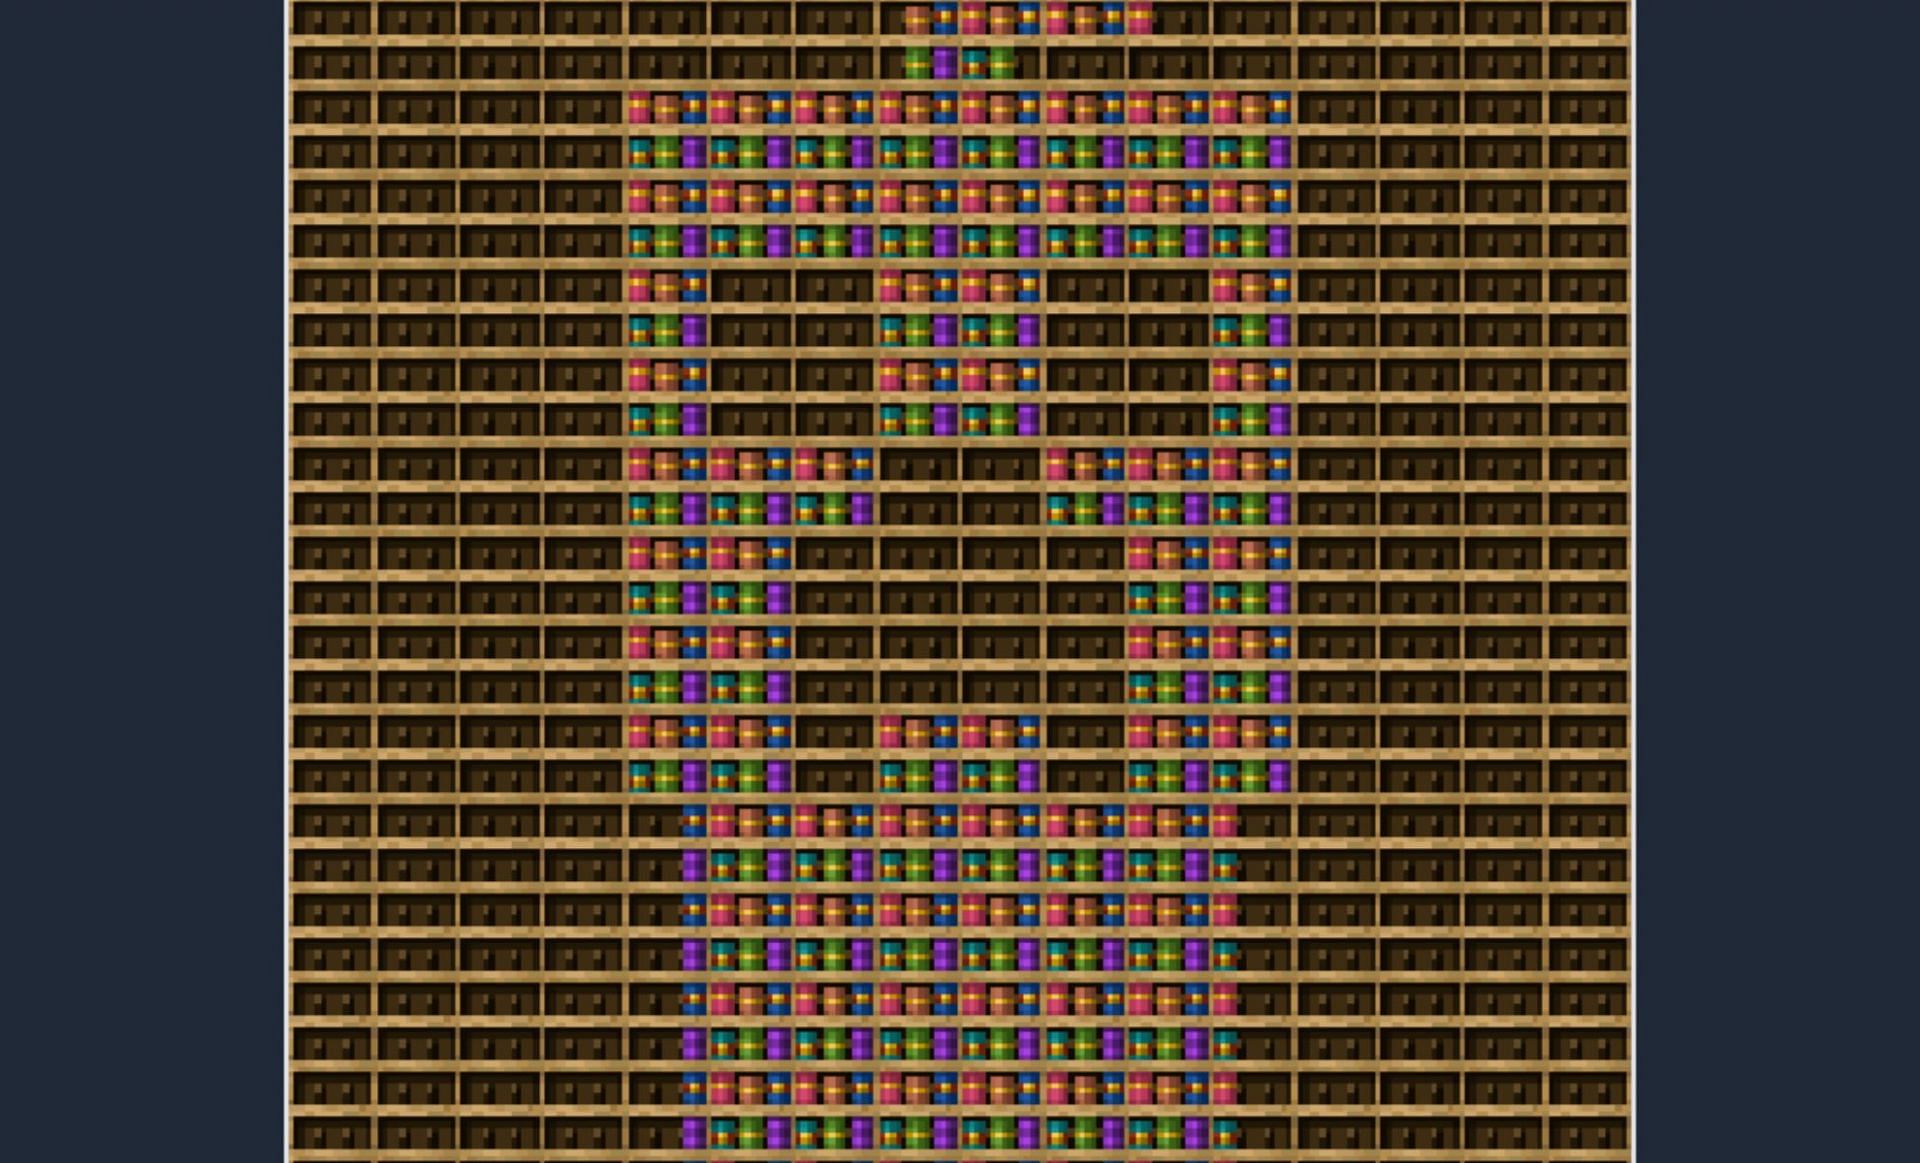 A generator for new pixel art (Image via u/MagnussenXD on Reddit)